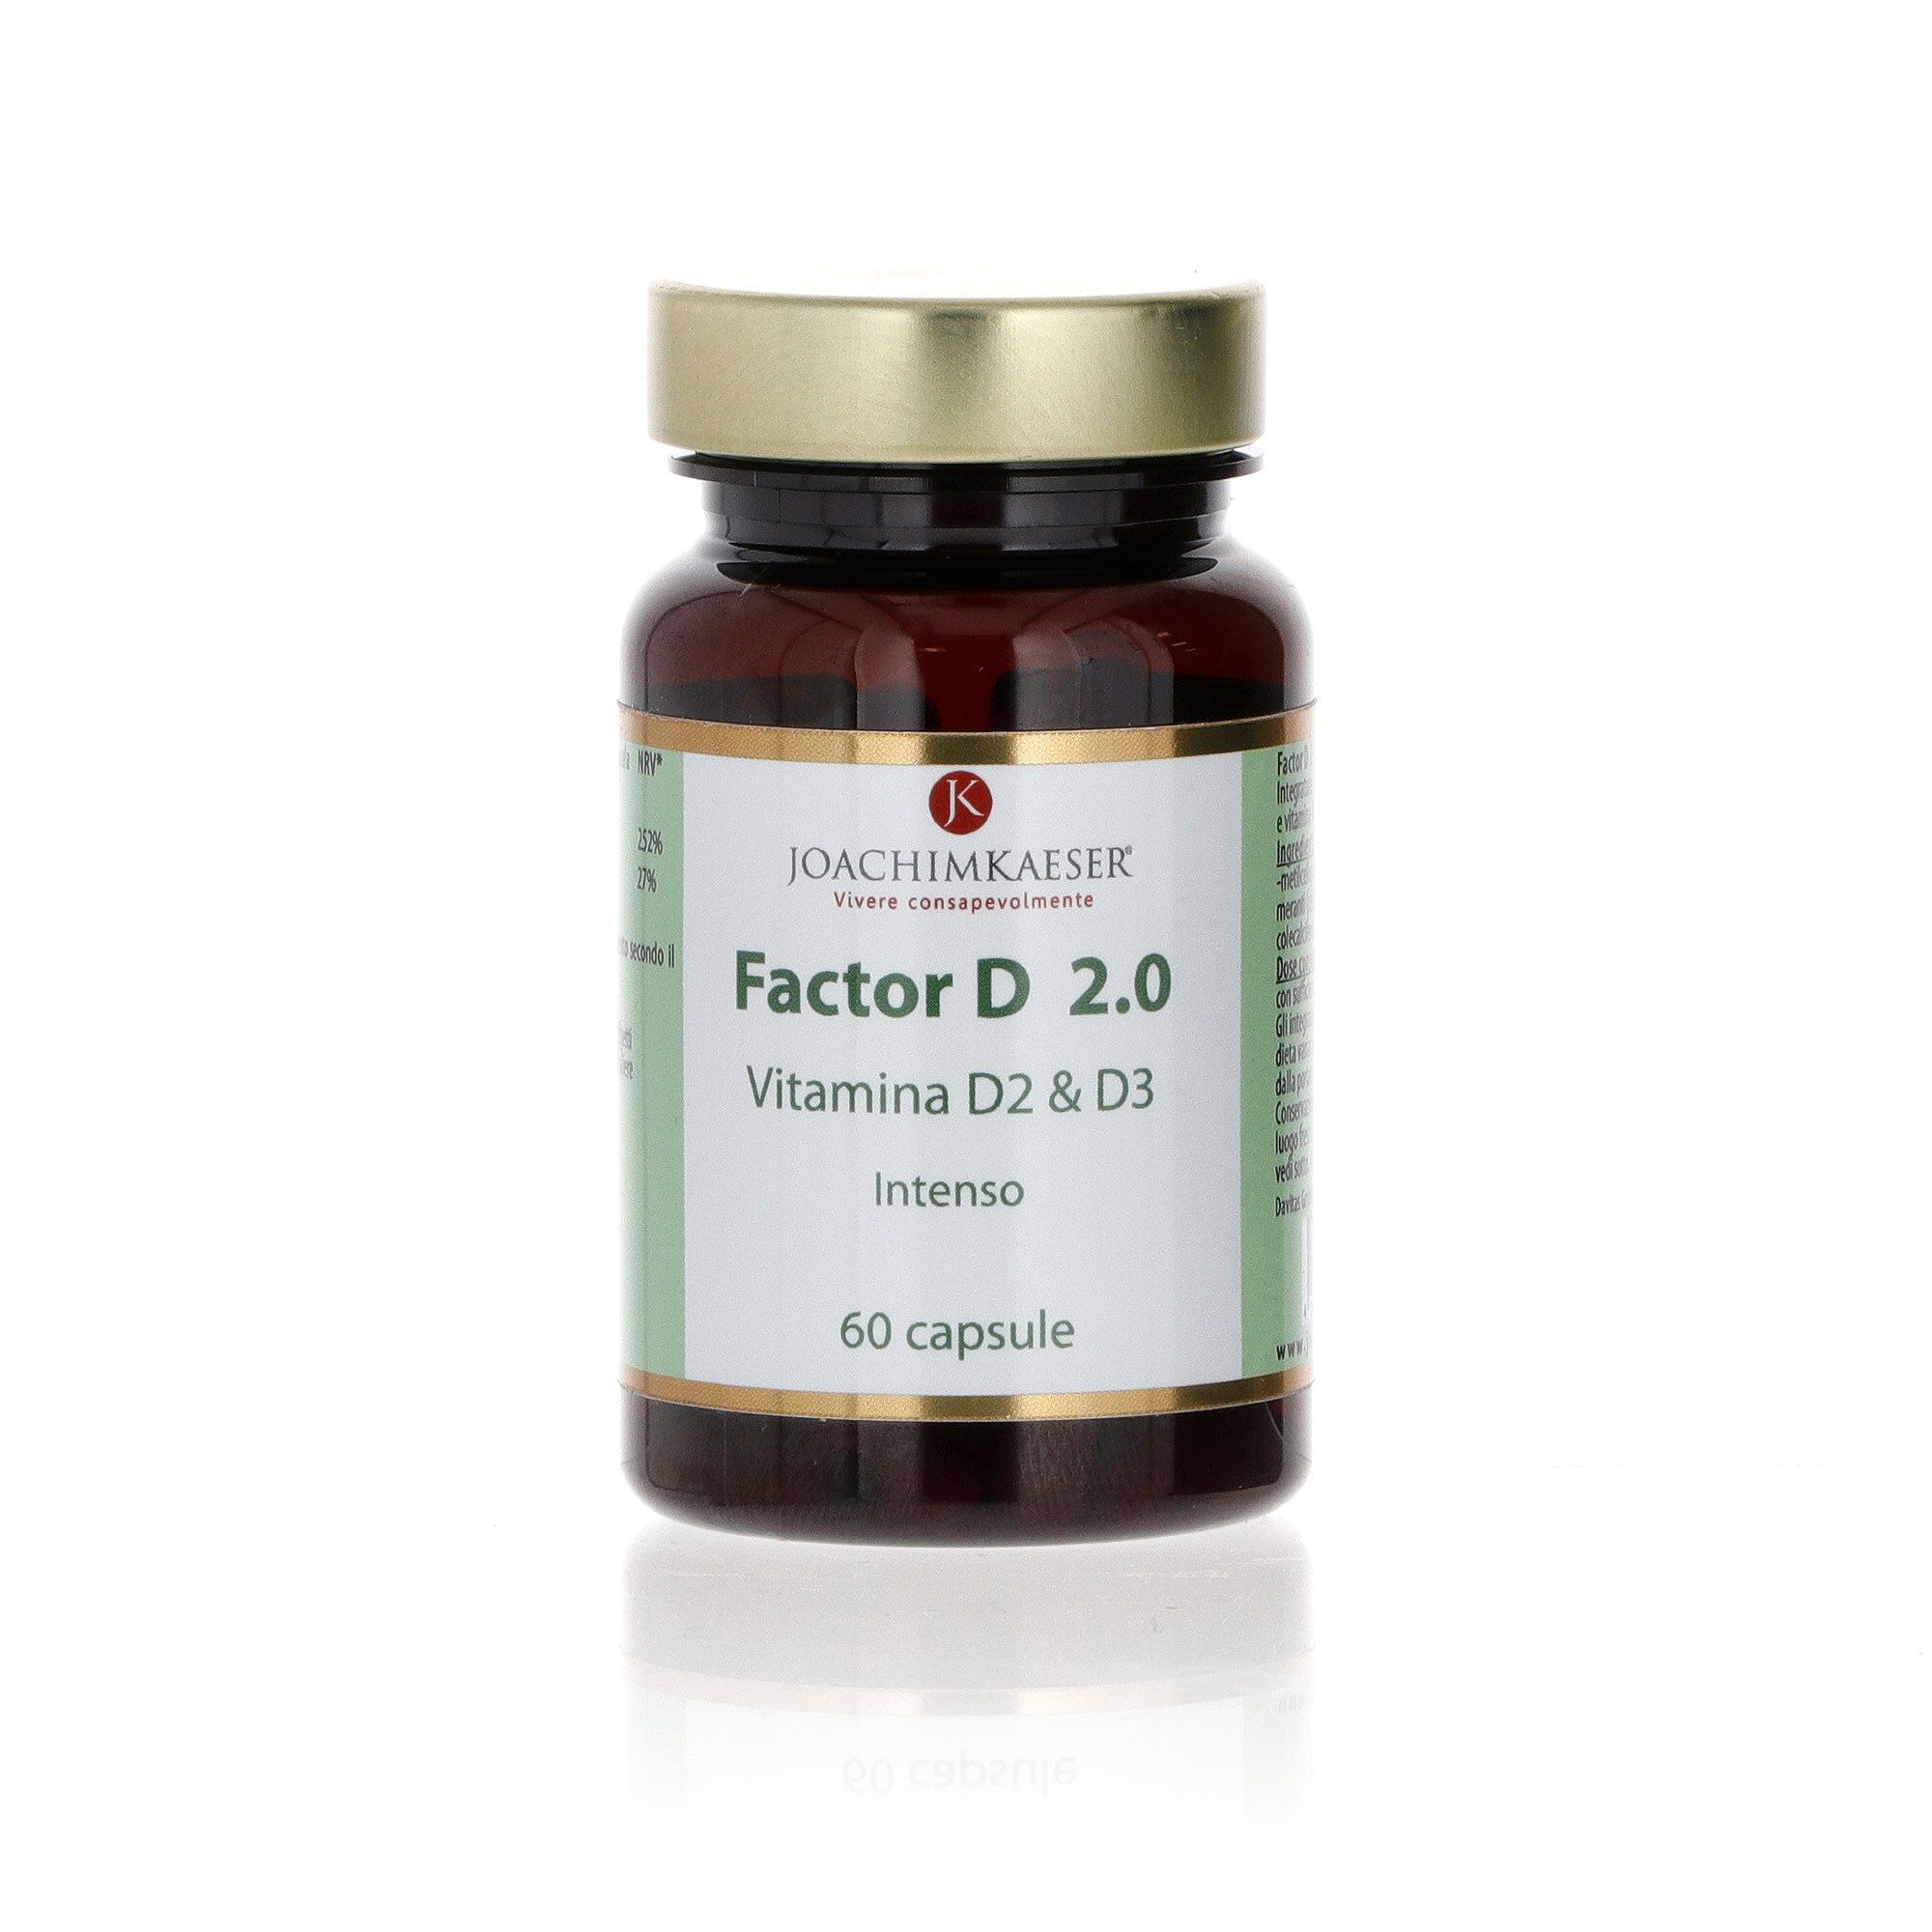 Image of Factor D 2.0 integratore alimentare con vitamine D2 e D3